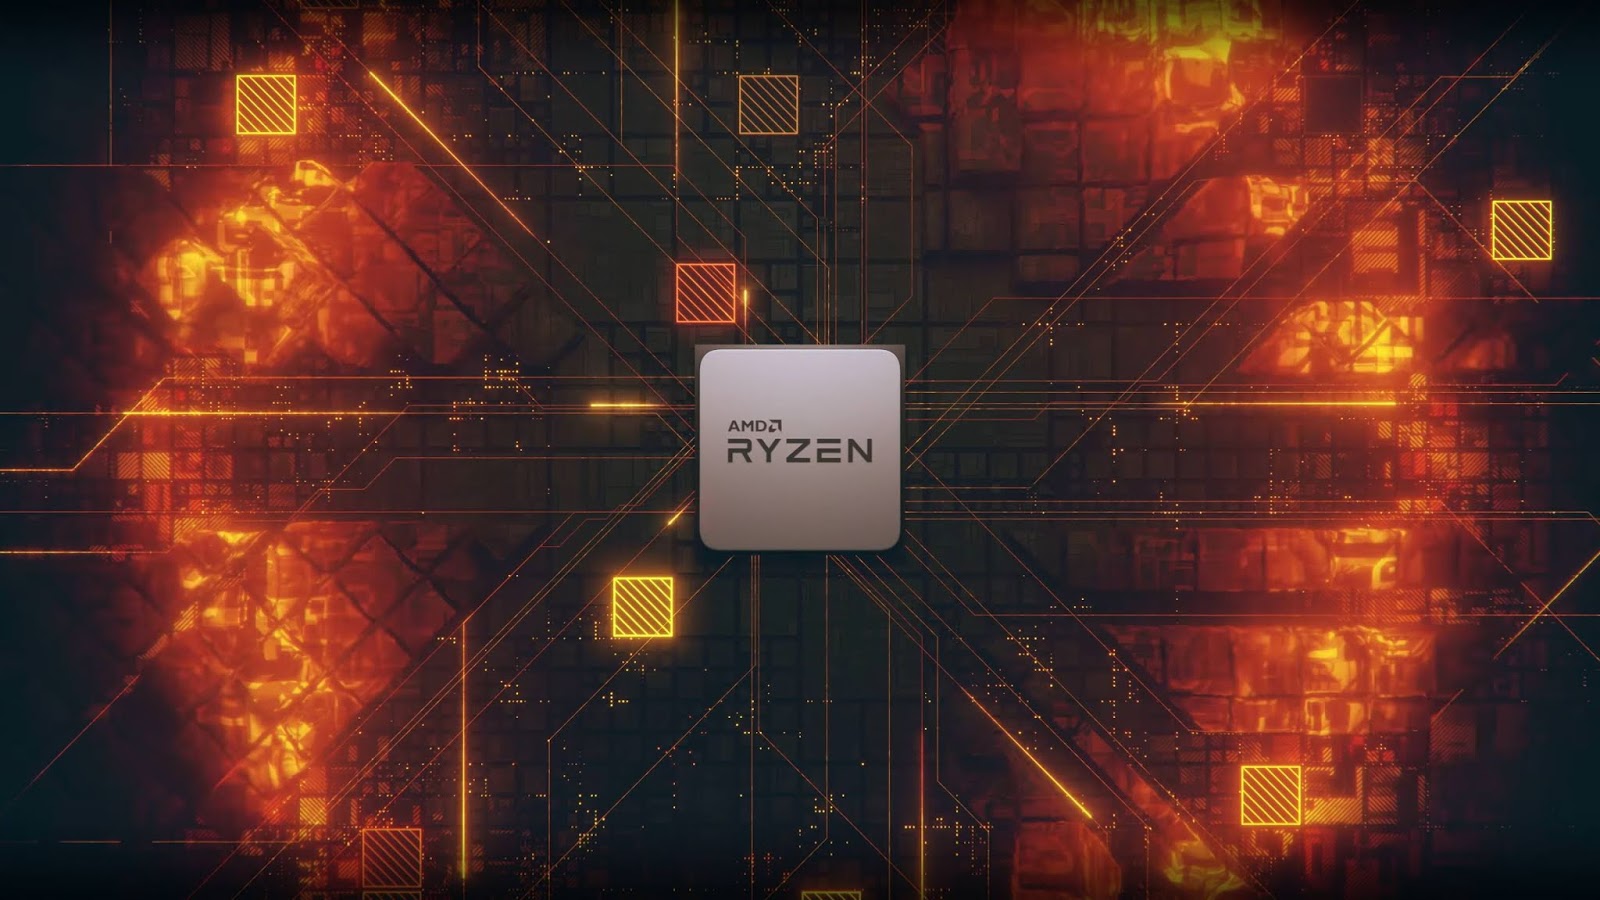 AMD Ryzen Wallpaper PC 4k